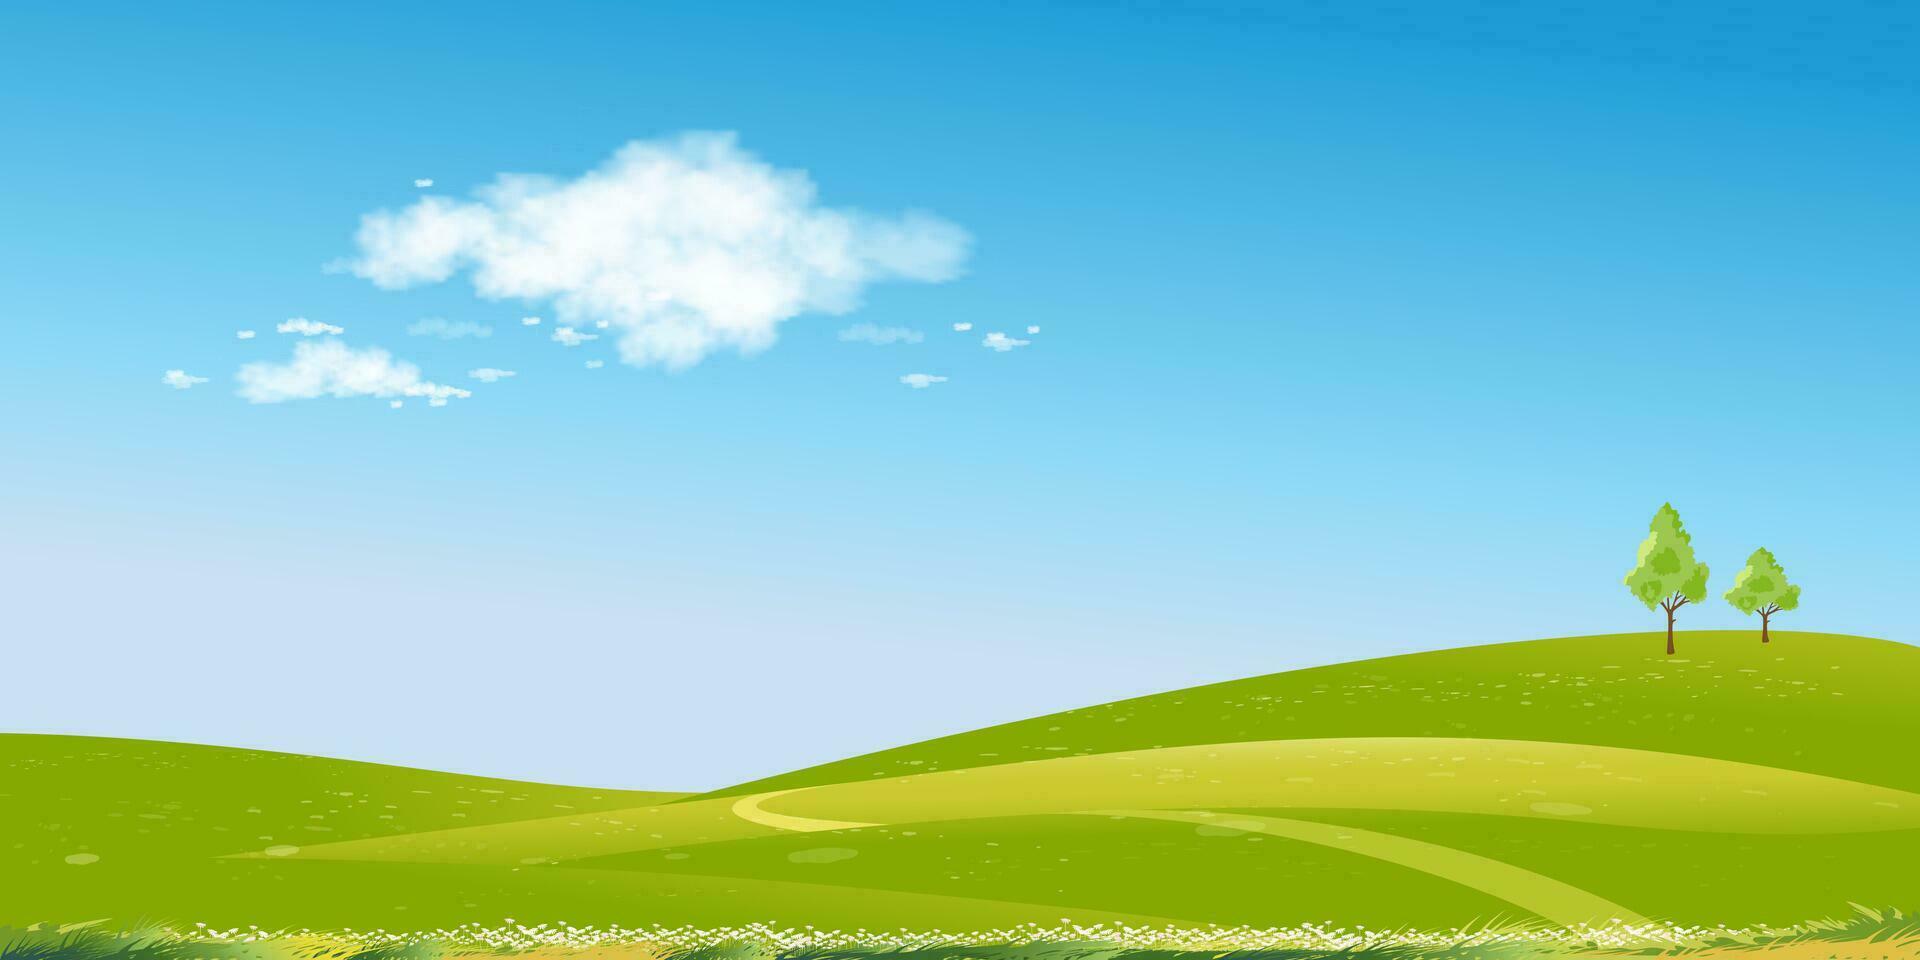 primavera paisaje verde campos,montaña,azul cielo y nubes fondo, horizonte pacífico rural naturaleza soleado día verano con césped tierra.dibujos animados vector ilustración para primavera y verano bandera